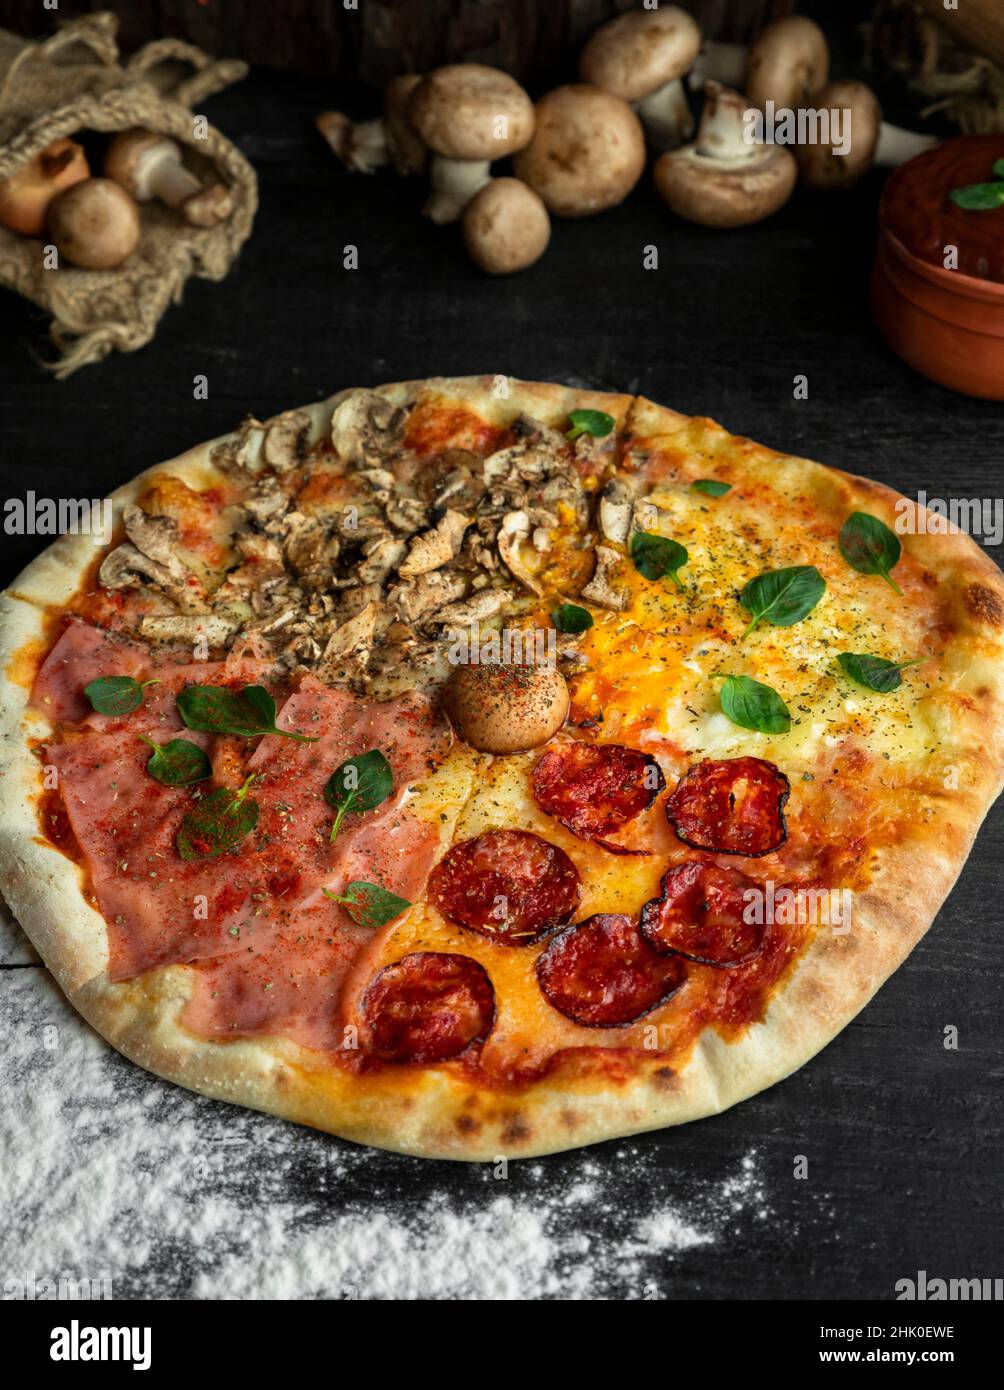 Pizza italienne four Seasons (Pizza Quattro Stagioni) avec différents ingrédients sur la table en bois dans la cuisine.Recettes italiennes faites maison. Banque D'Images